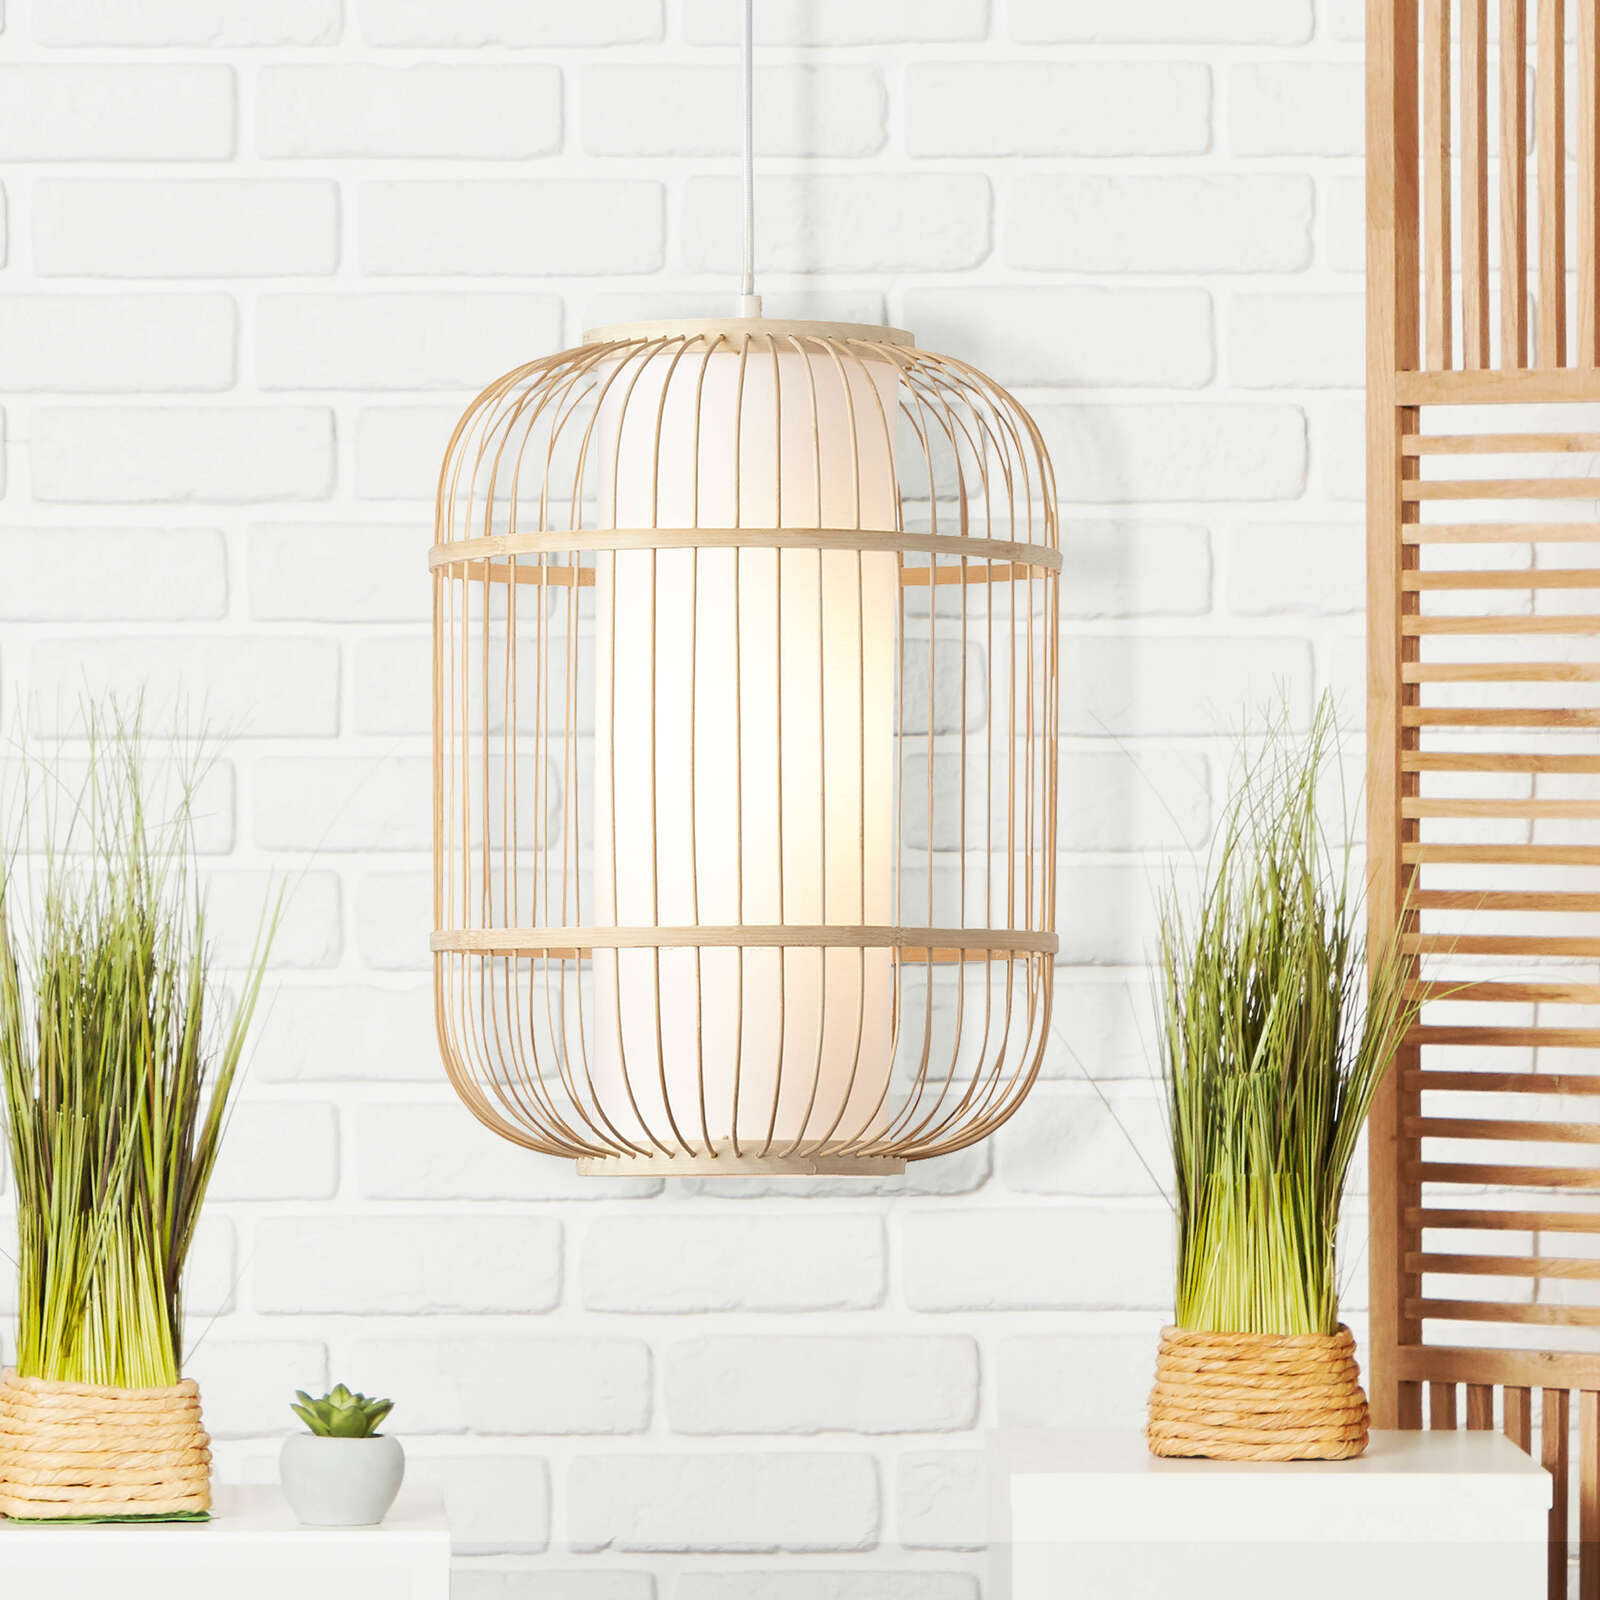             Bamboe hanglamp - Charlie 1 - Bruin
        